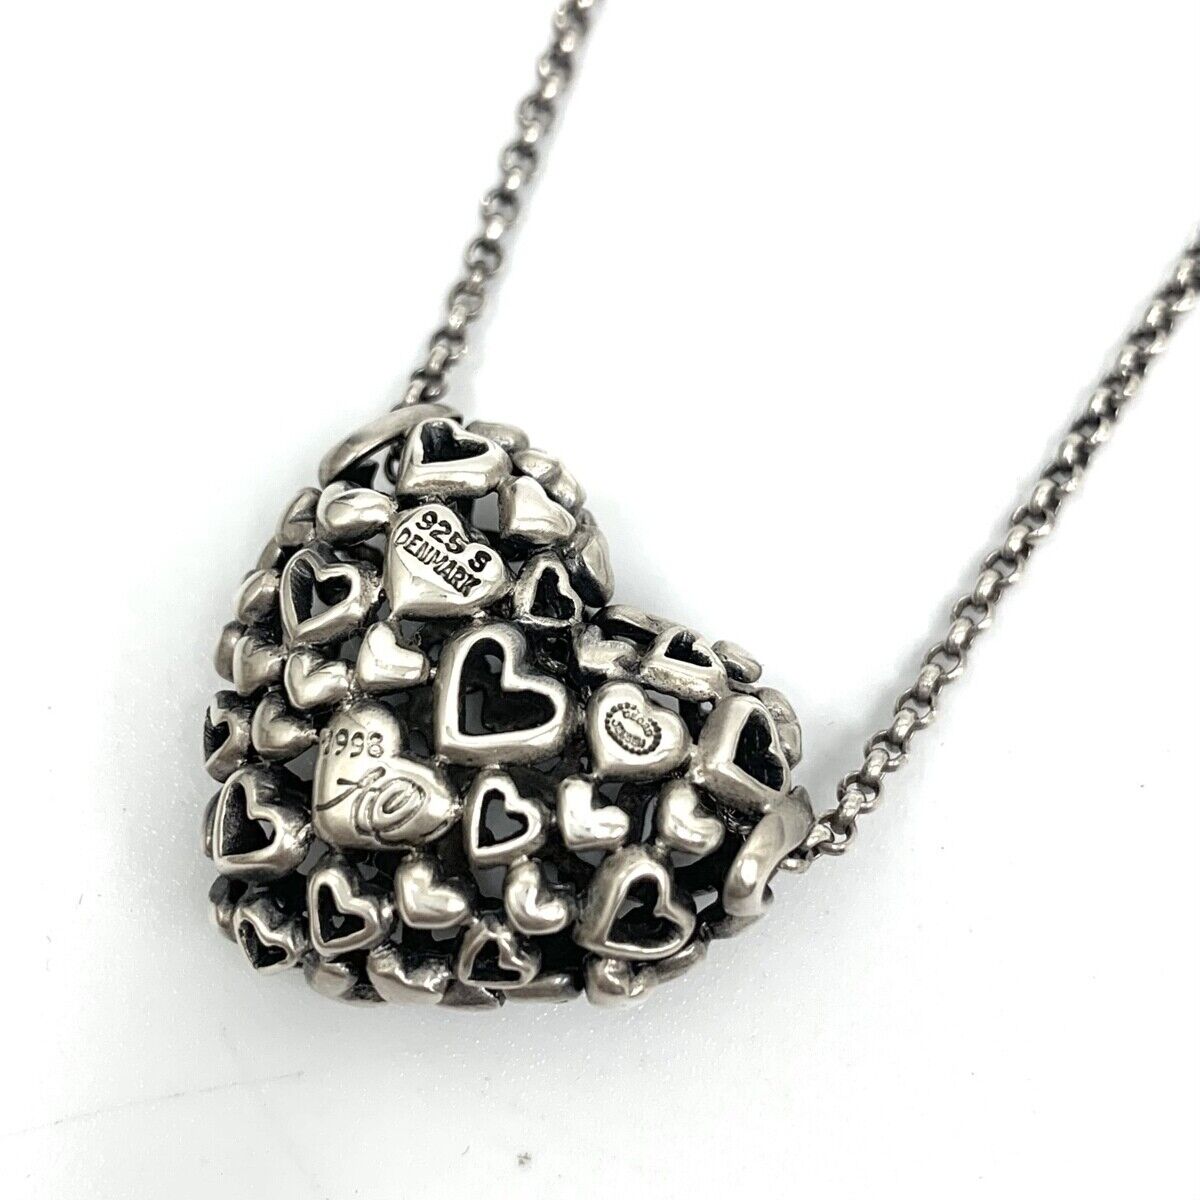 Georg Jensen Necklace Pendant 1998 Heart Sterling Silver Denmark Jewelry  #26489